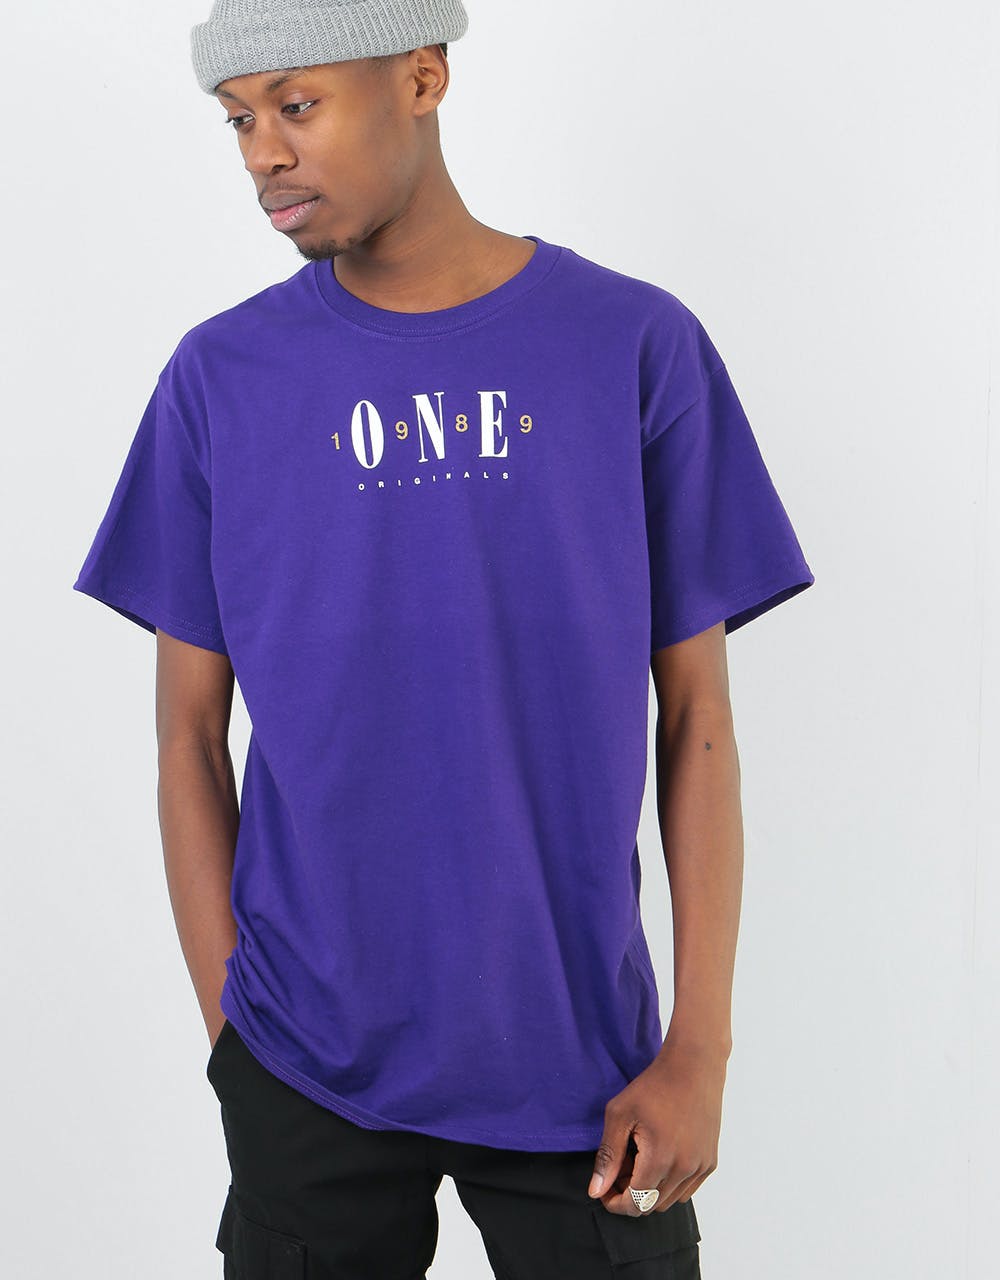 Route One Originals T-Shirt - Purple